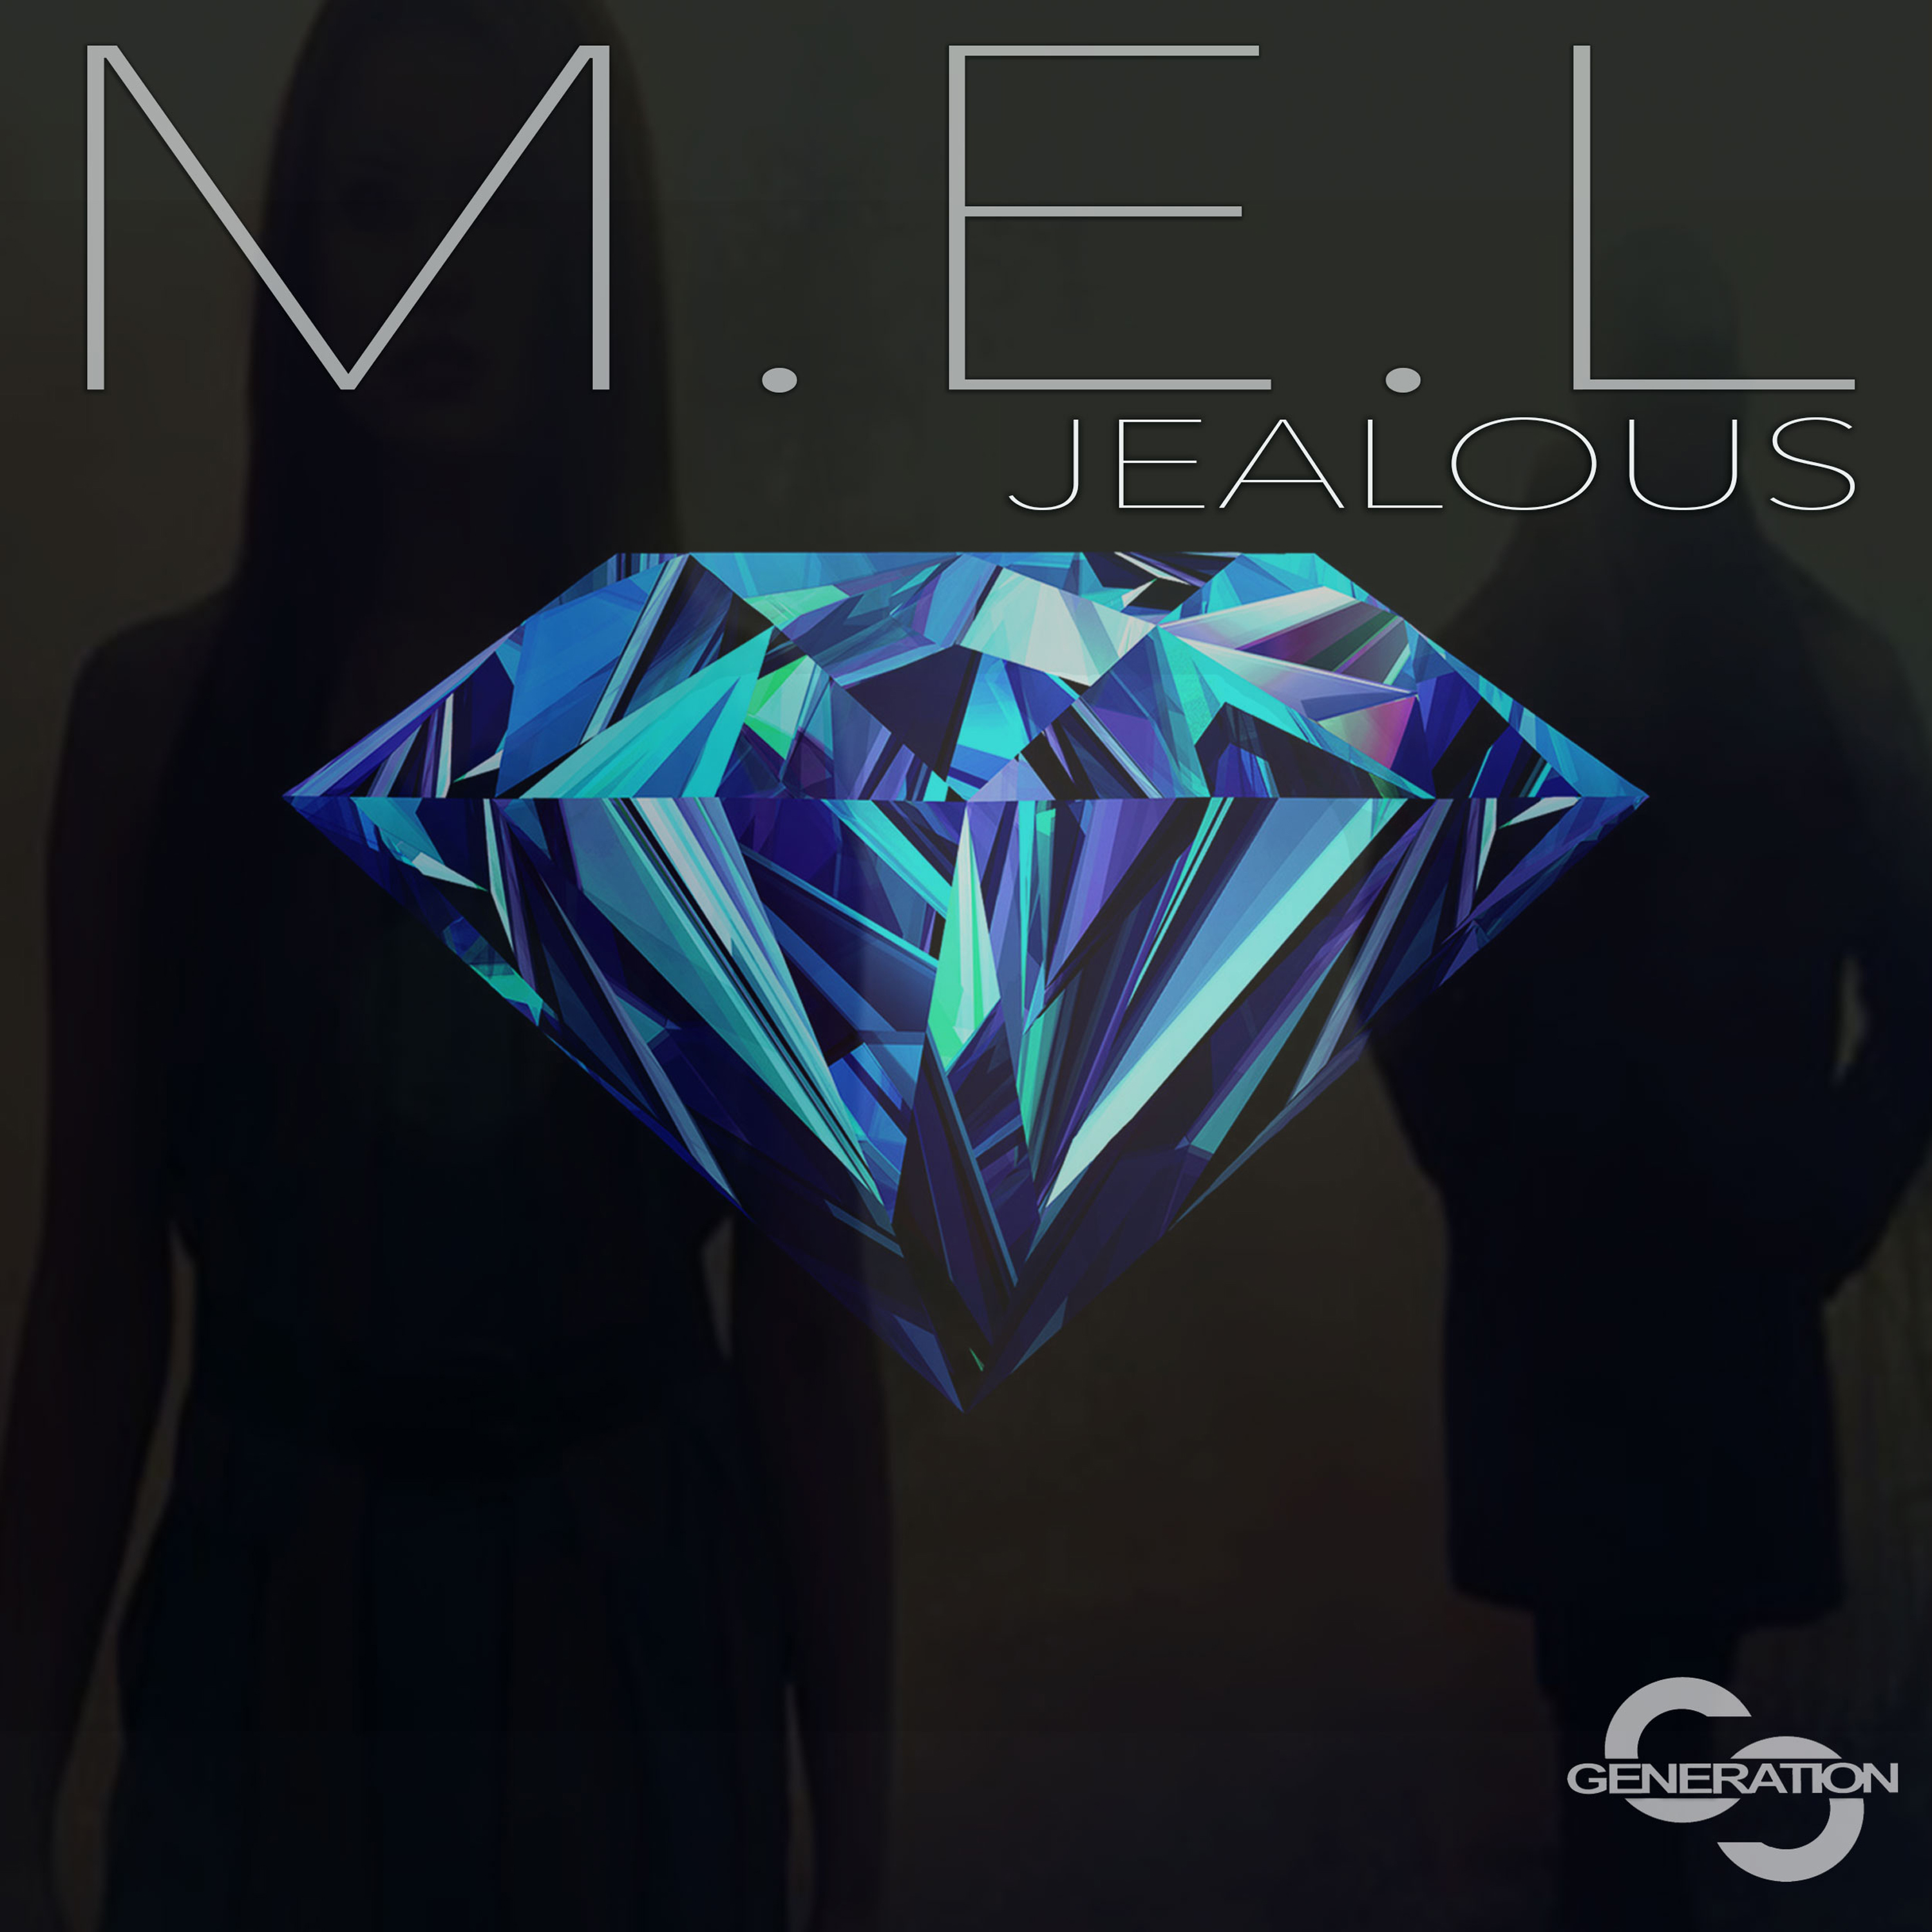 Jealous (Dave Aude Dub Mix)